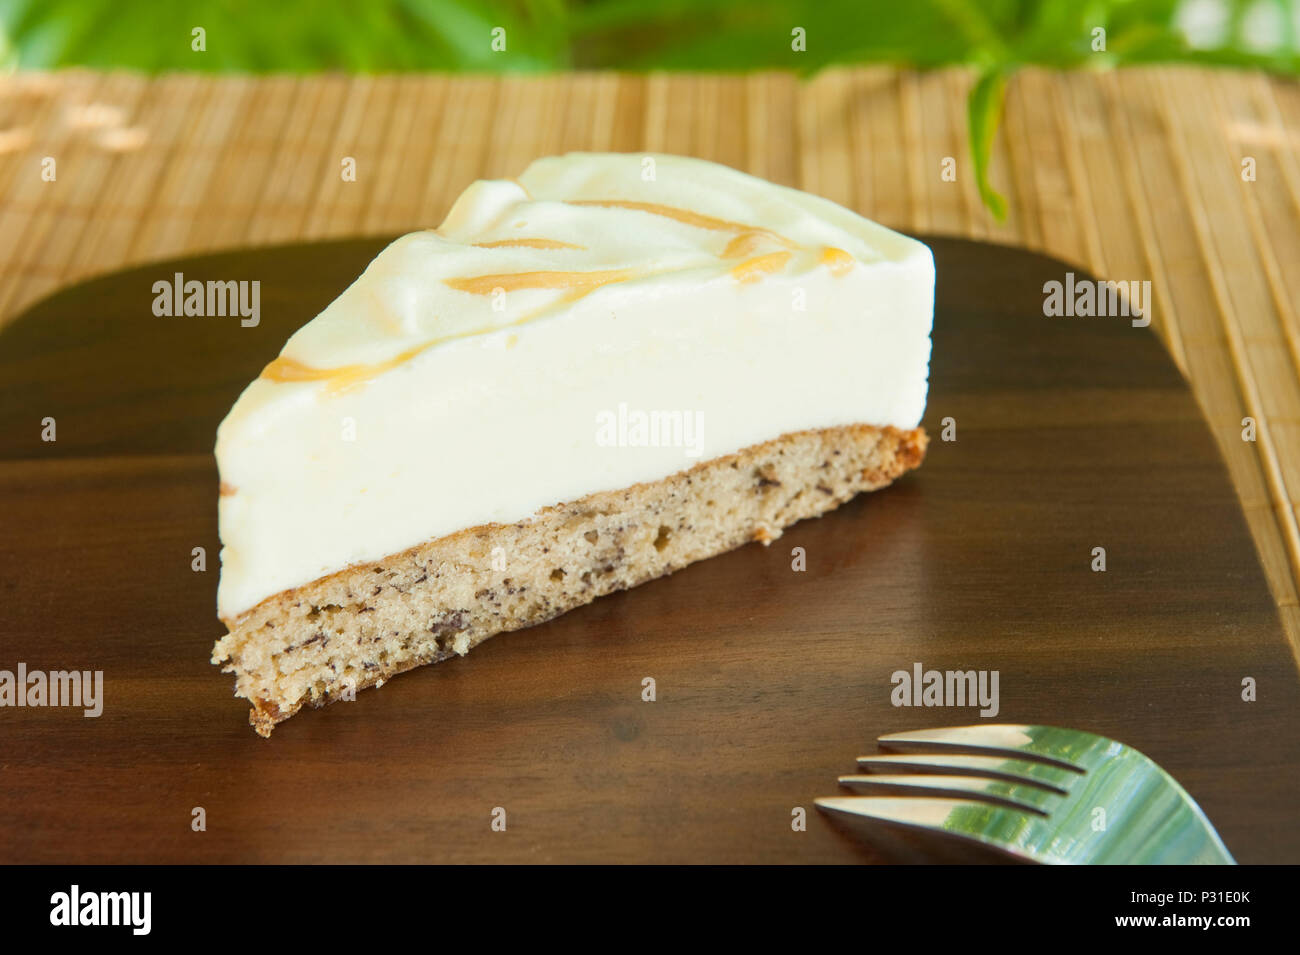 Tranche de gâteau avec de la crème glacée Crème glacée à la vanille sur pain de banane avec un tourbillon de caramel sur une plaque de bois Banque D'Images